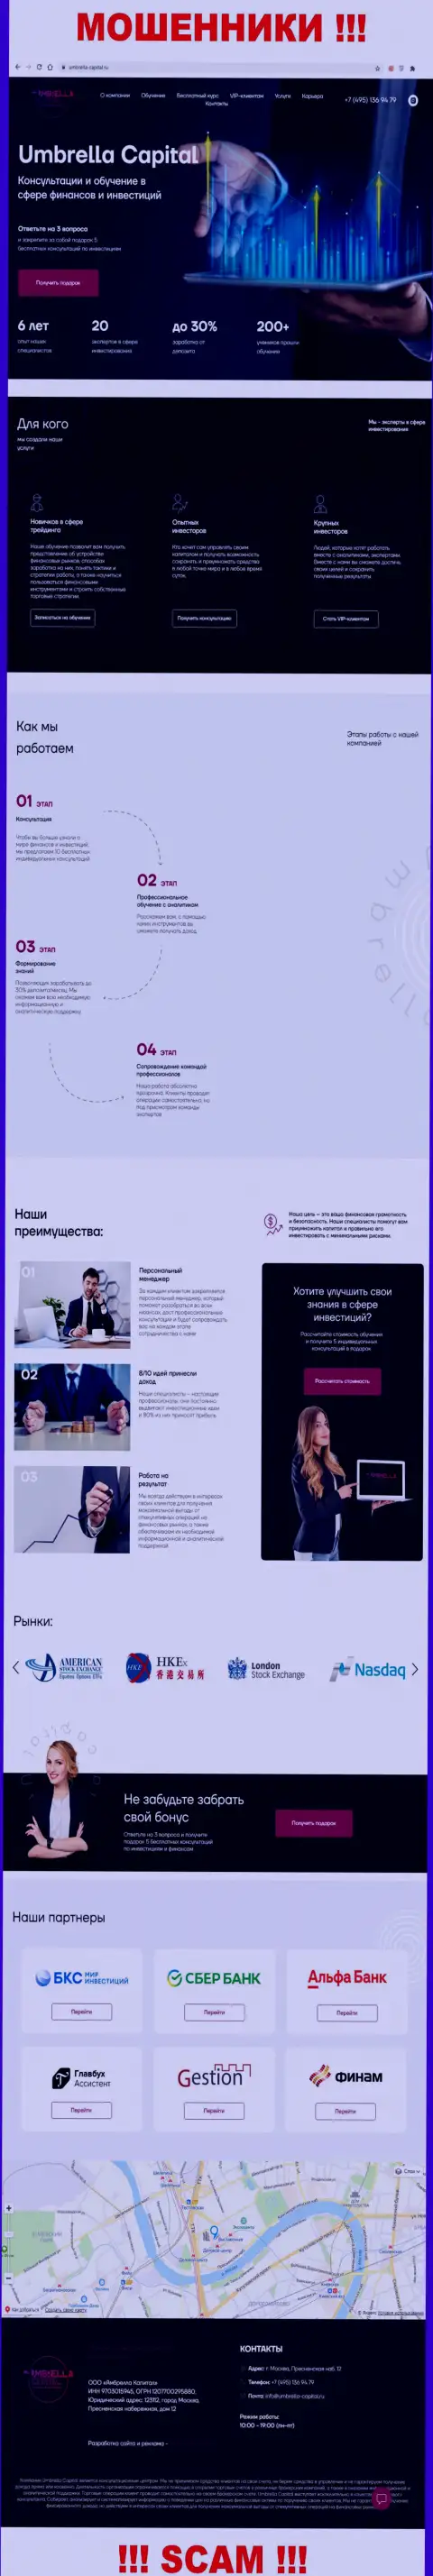 Внешний вид официального онлайн-сервиса жульнической организации Umbrella-Capital Ru